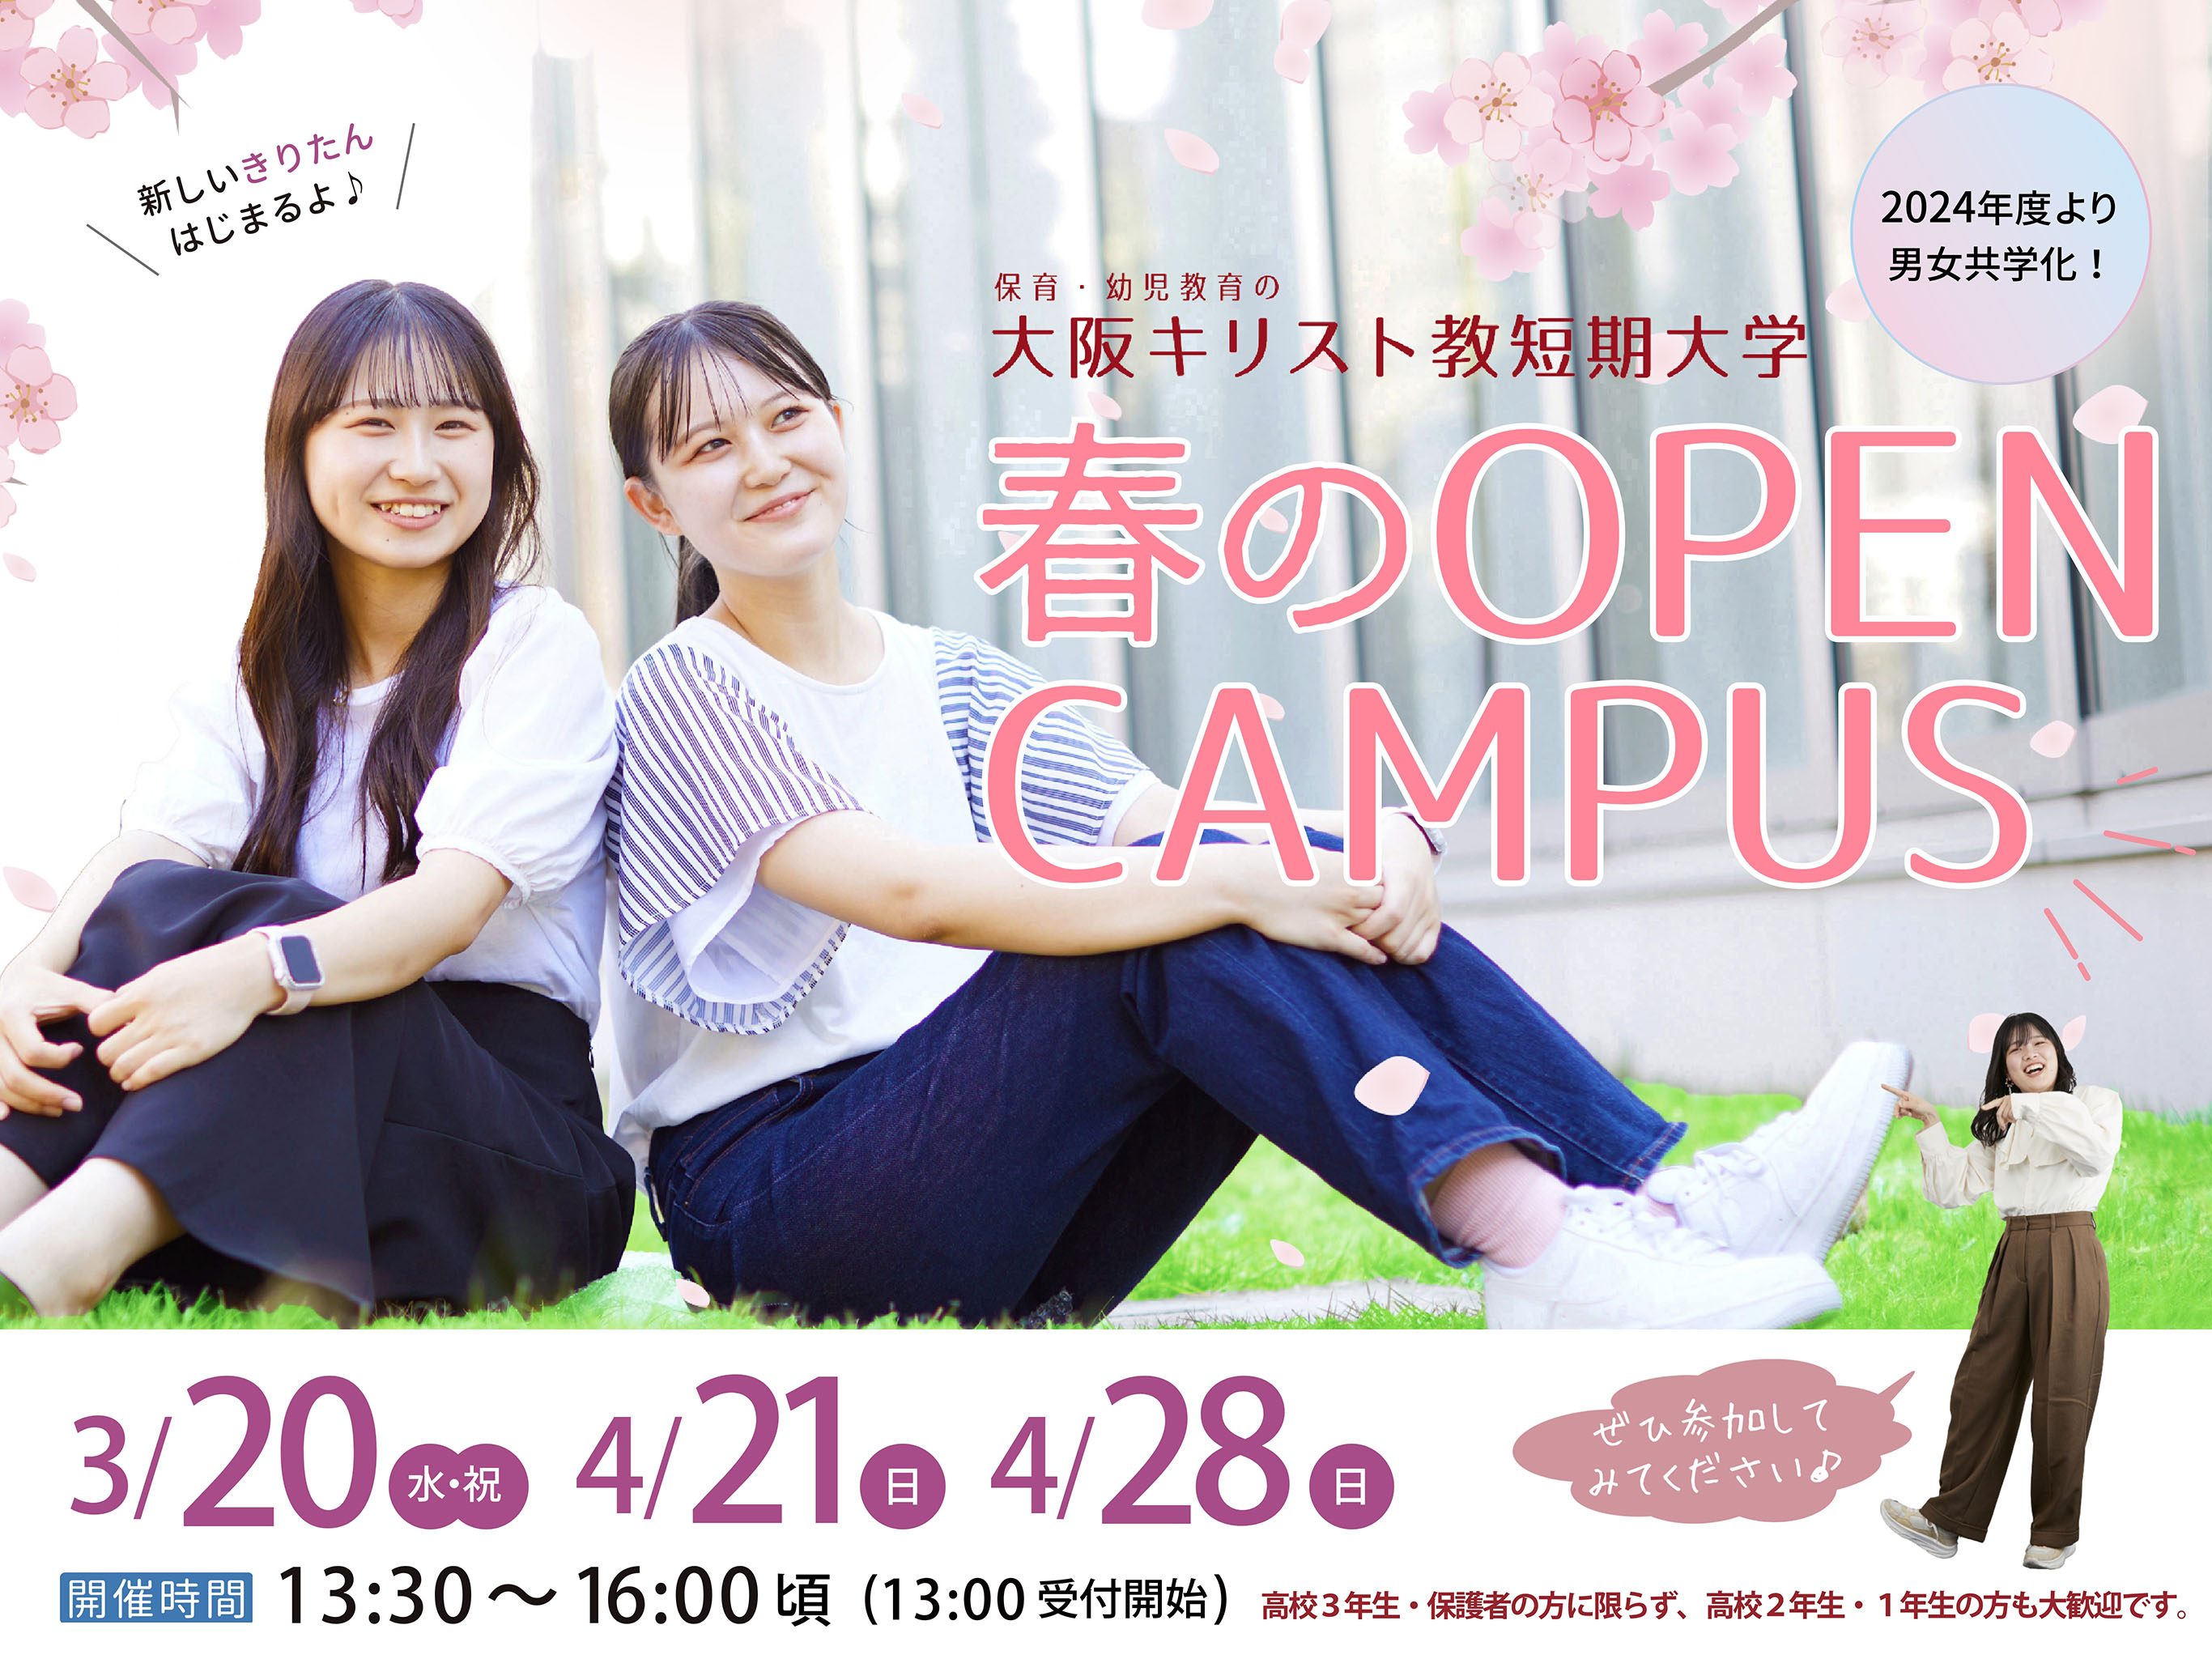 大阪キリスト教短期大学 OPEN CAMPUS